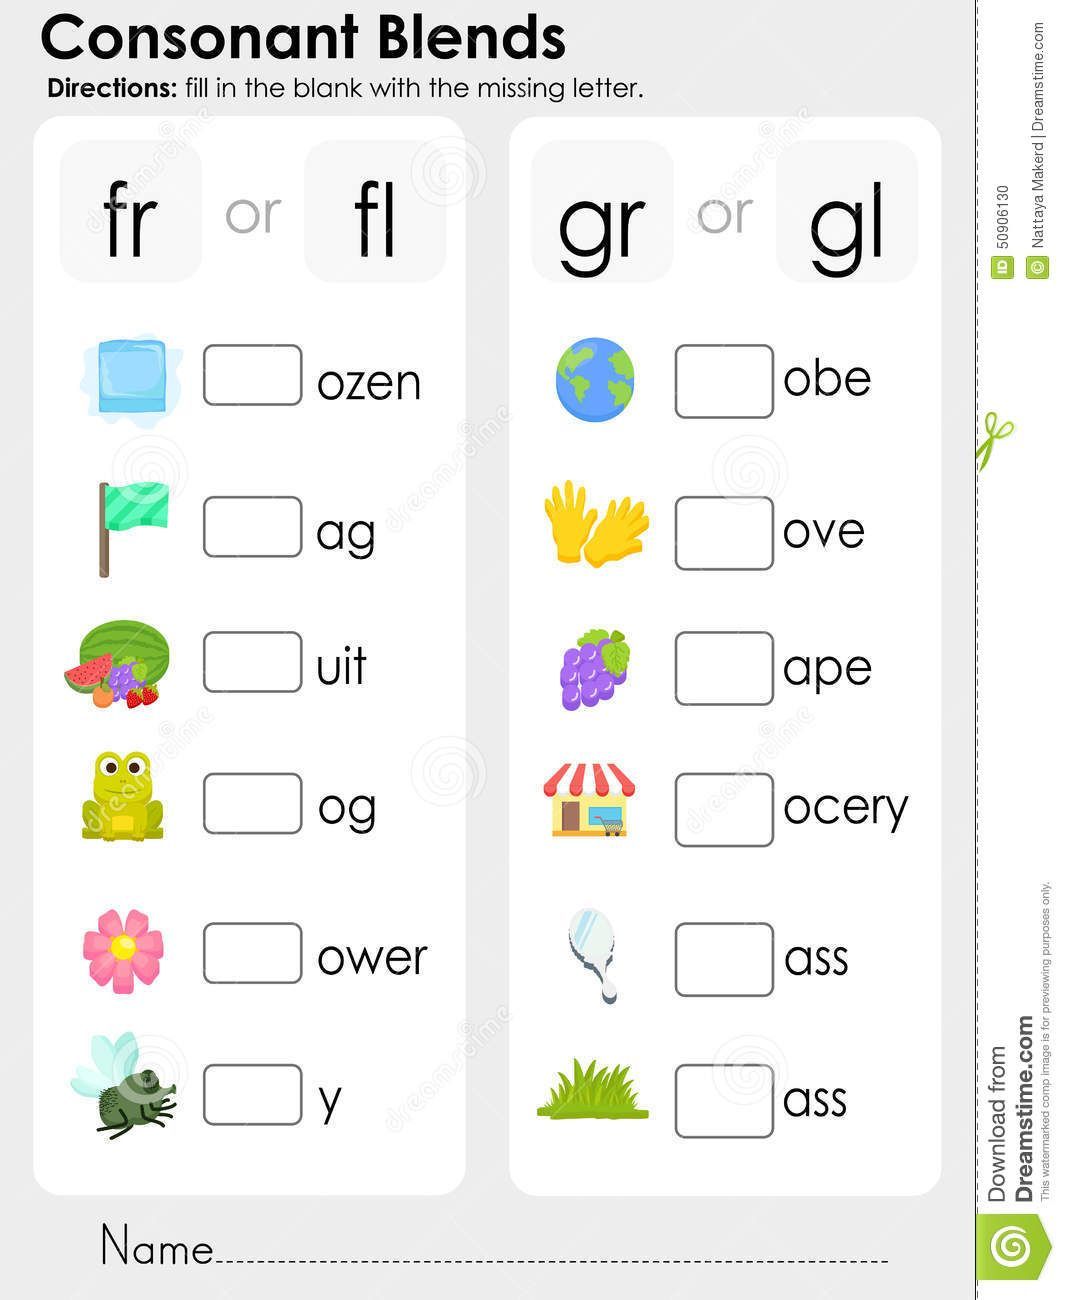 Consonant Blends : Missing Letter - Worksheet For Education